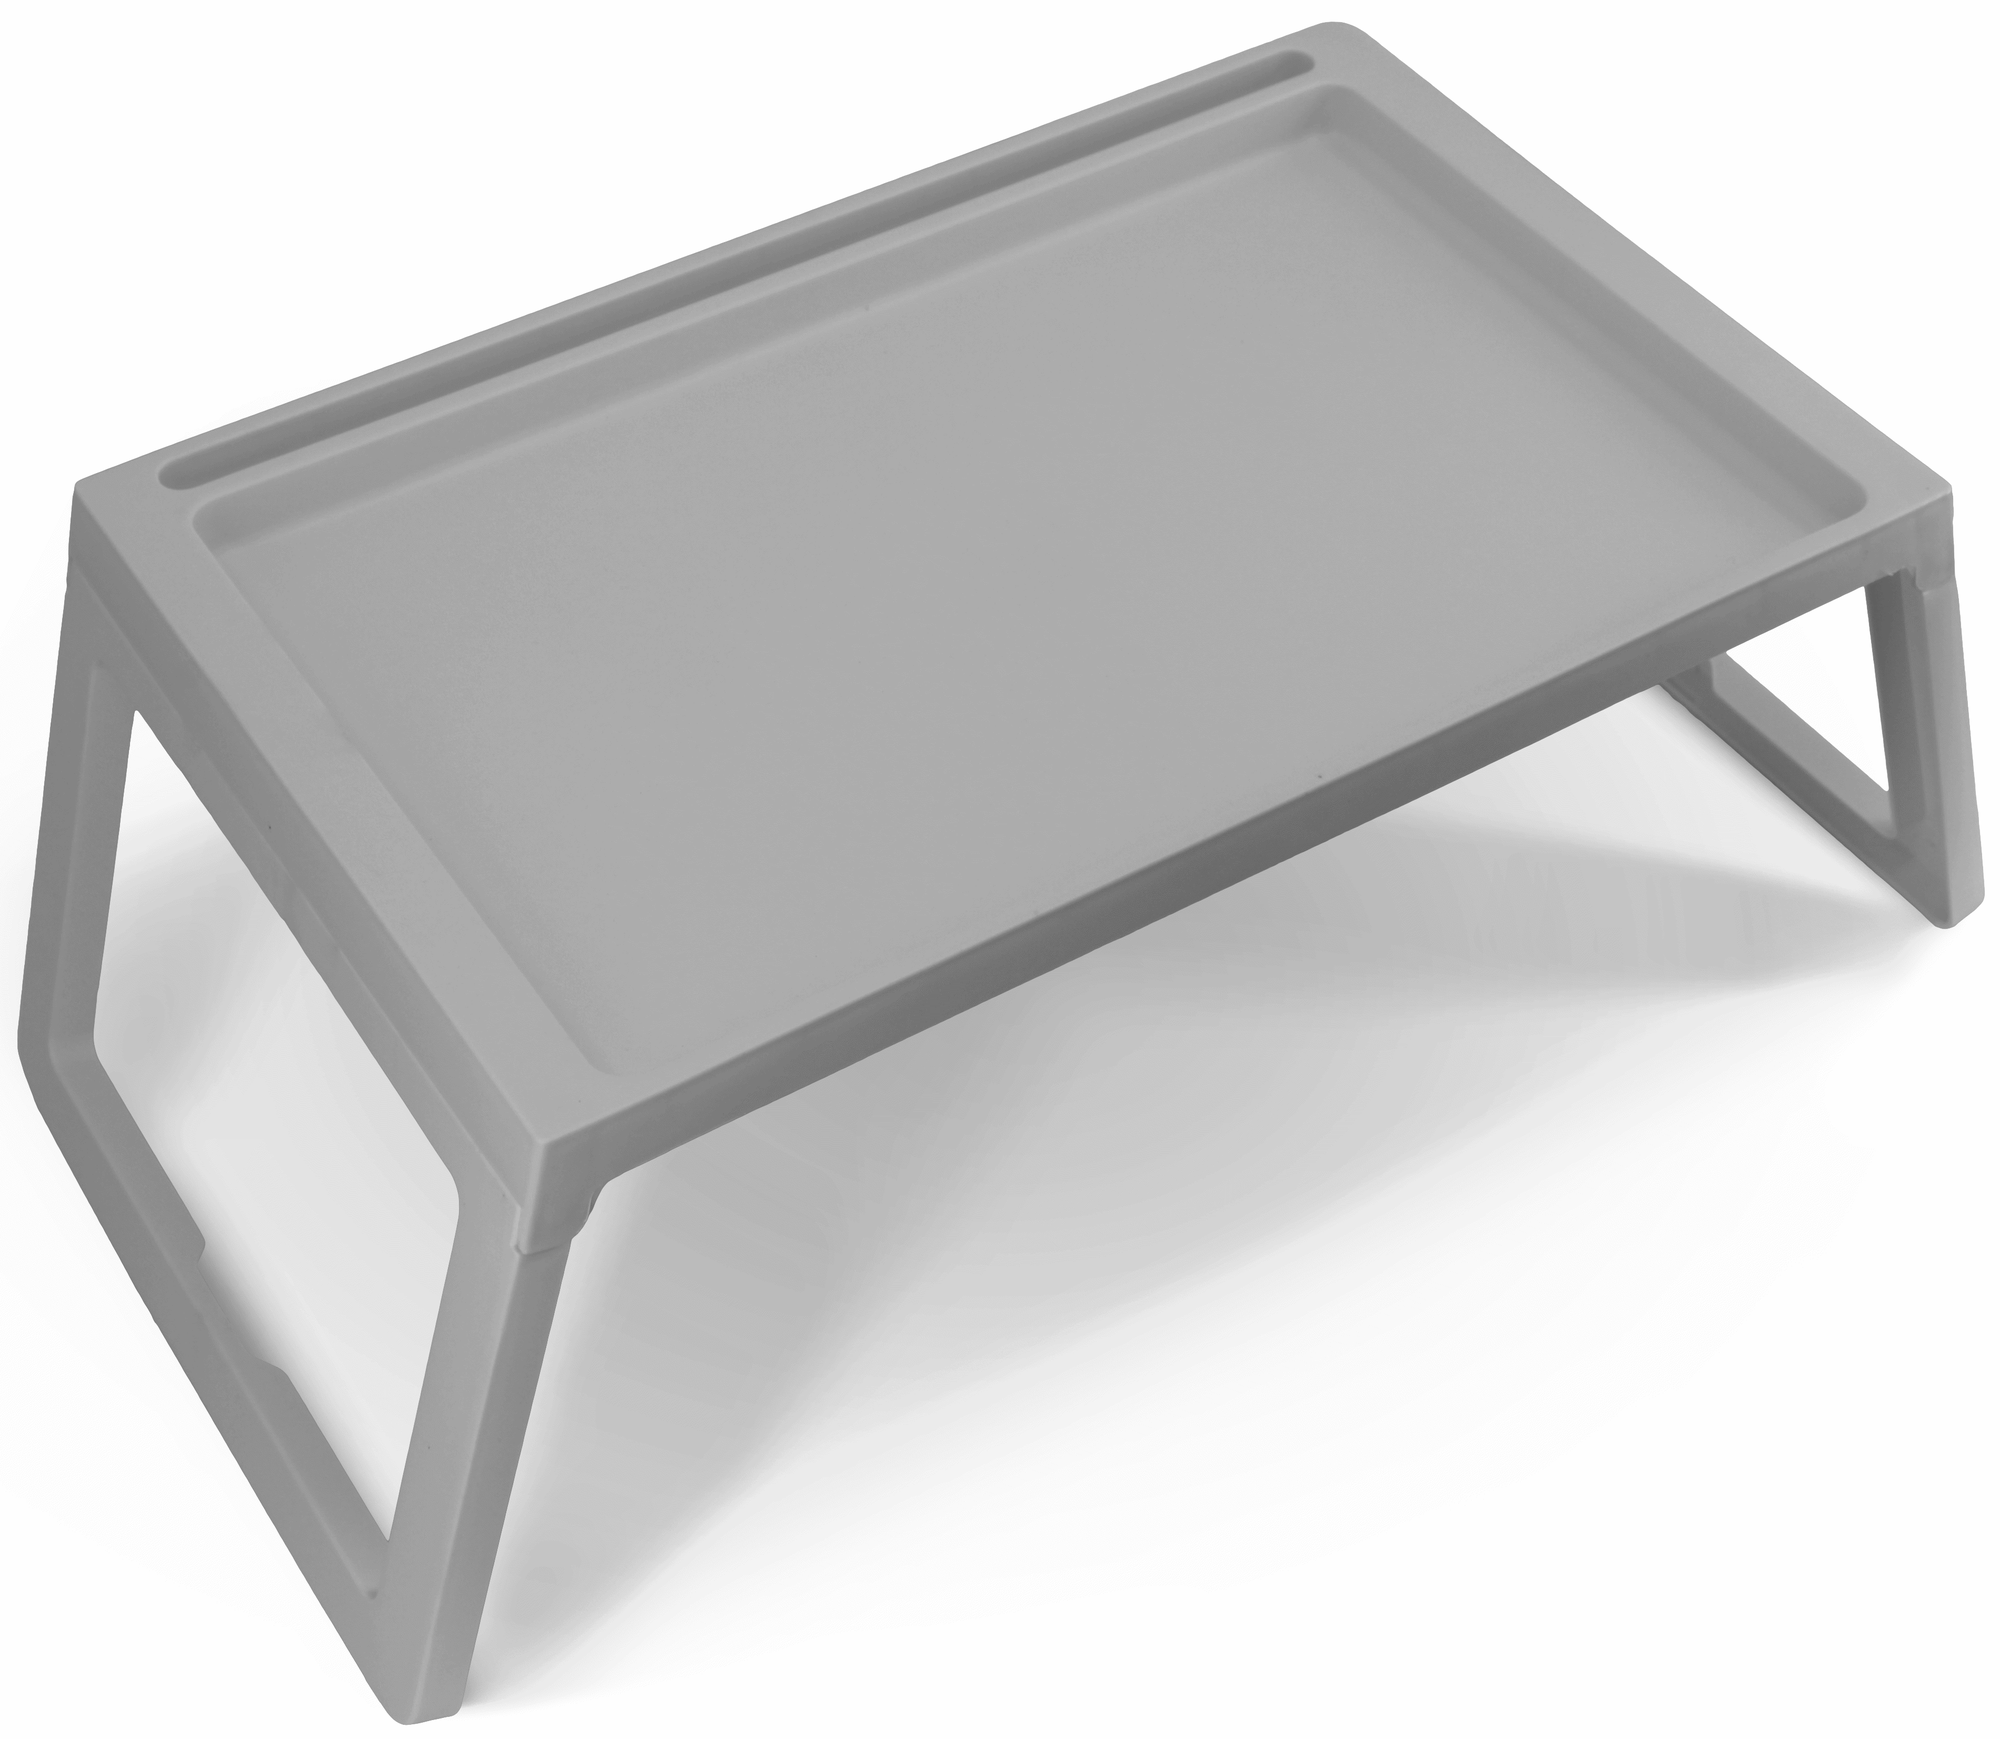 Столик прямоугольный 54.5x35.5 см пластик цвет серый